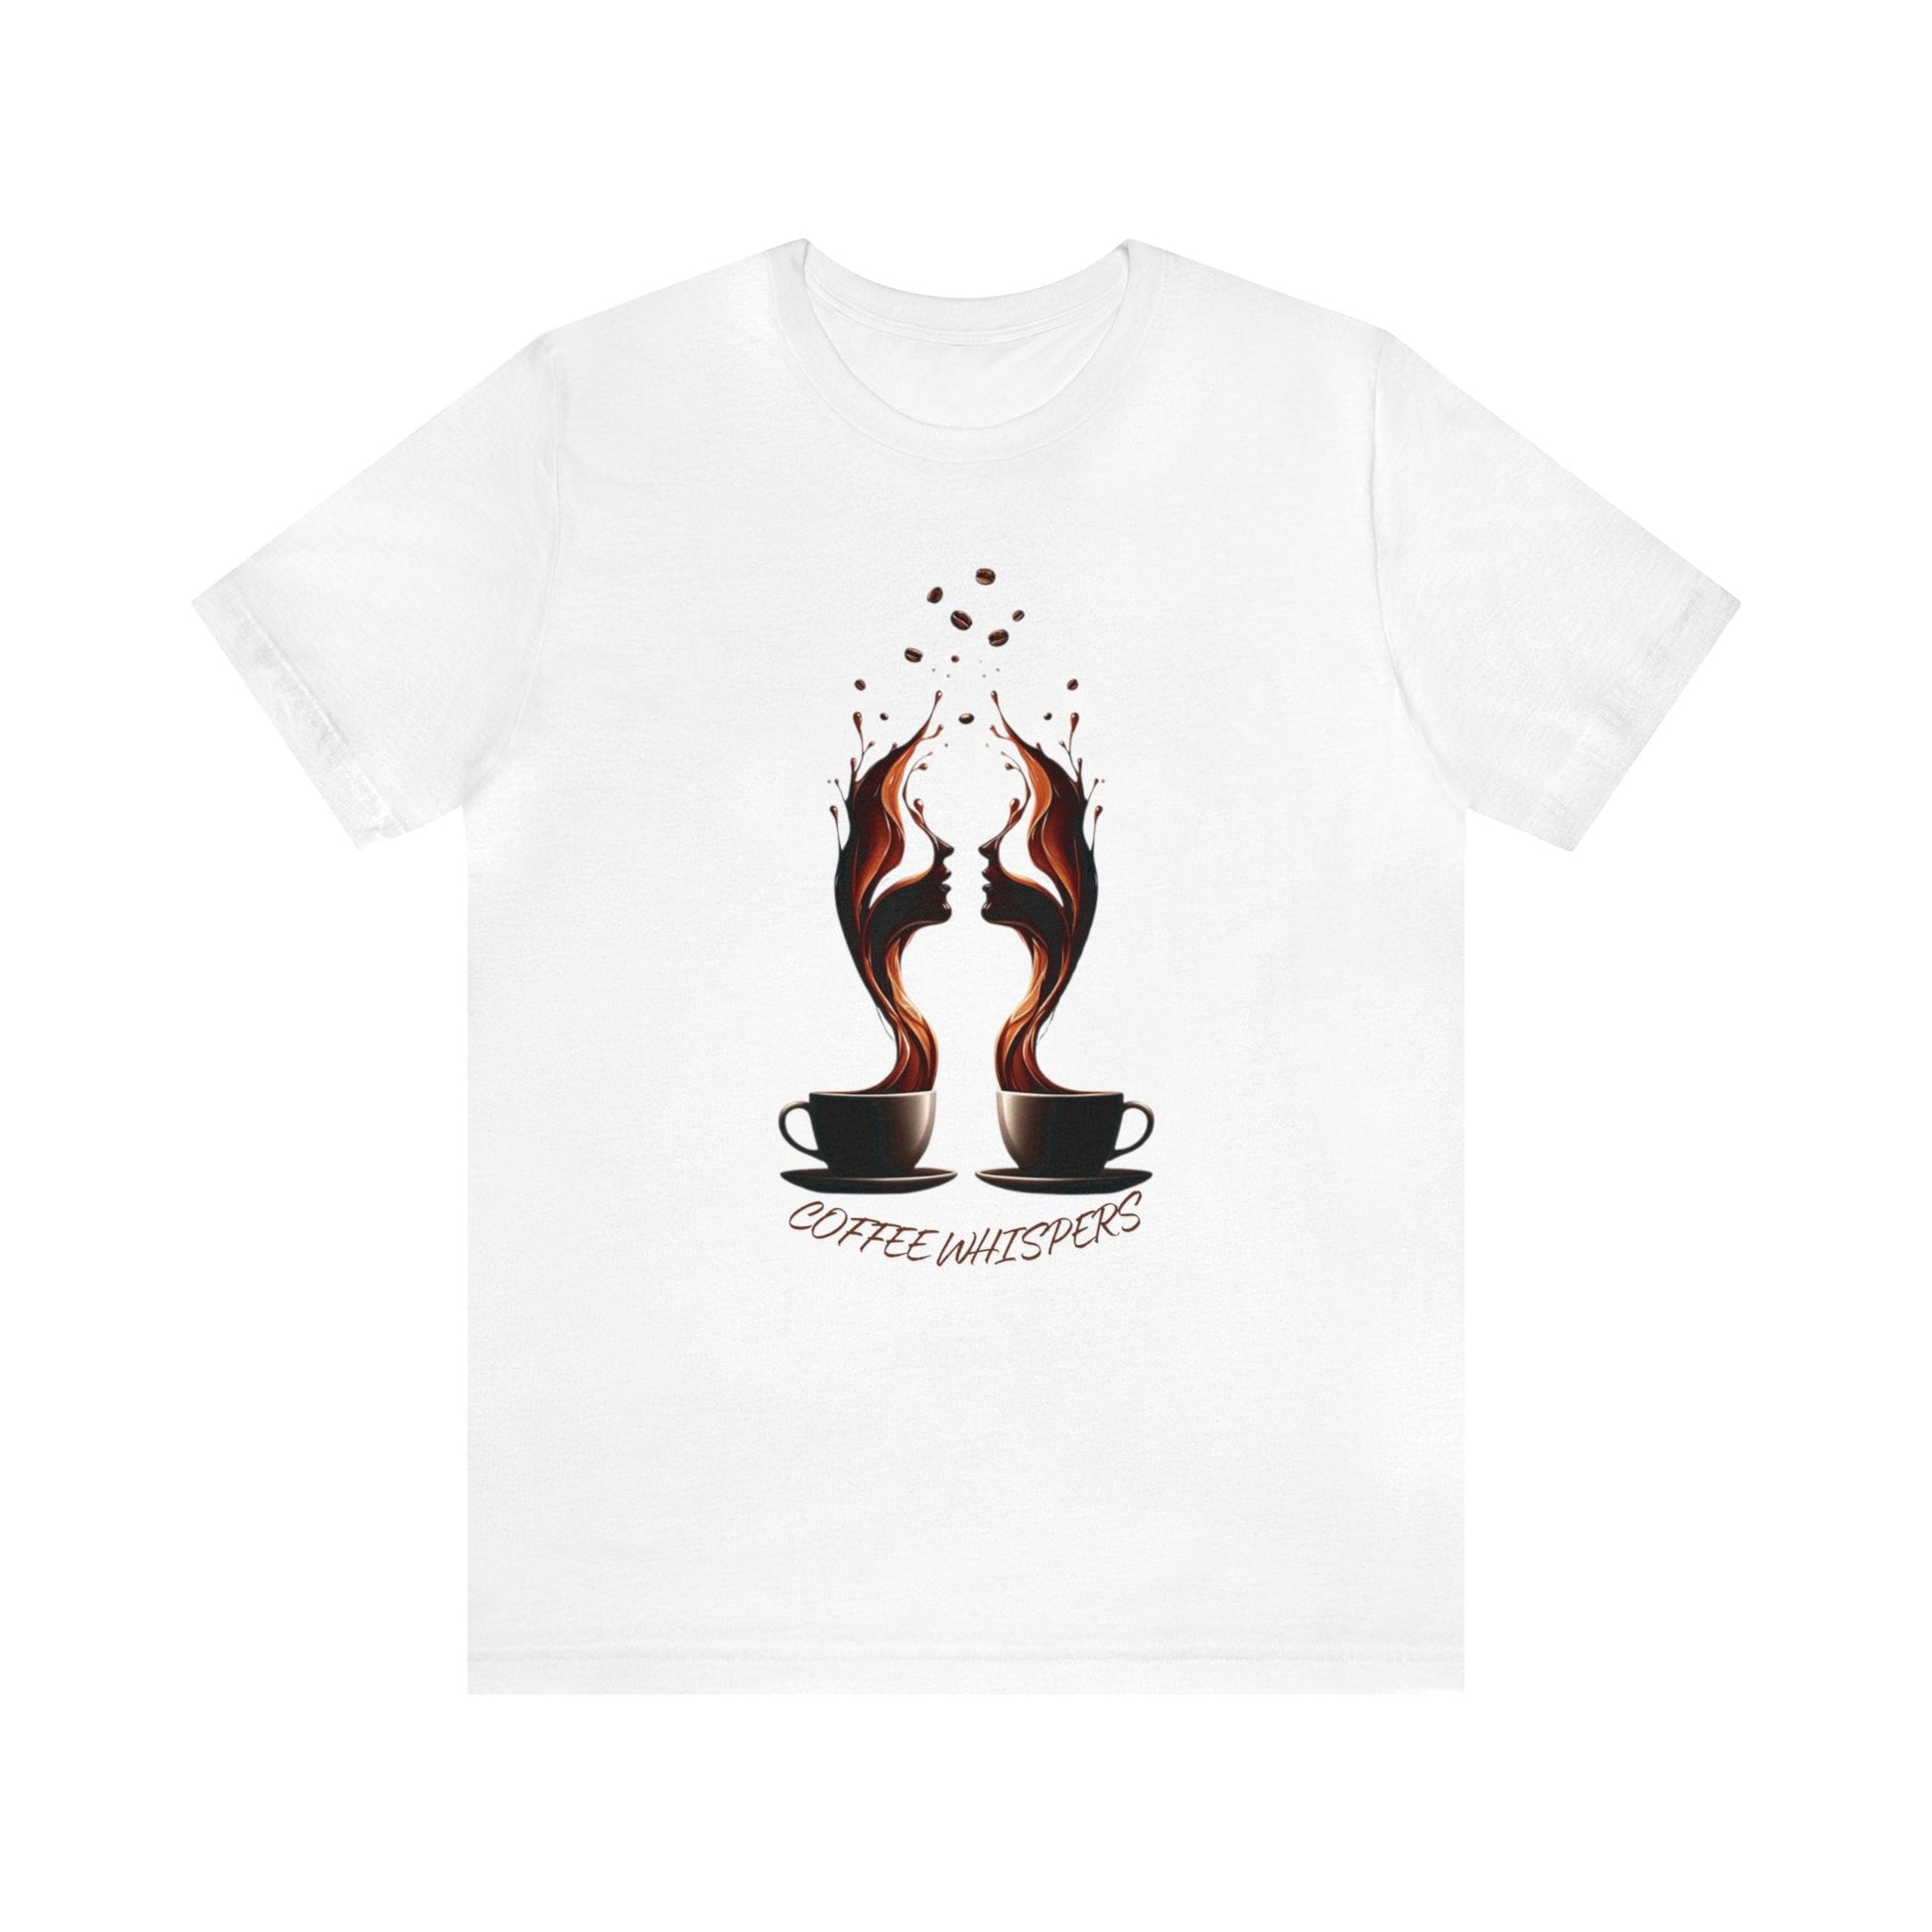 Coffee Whispers T-shirt. - InkArt Fashions